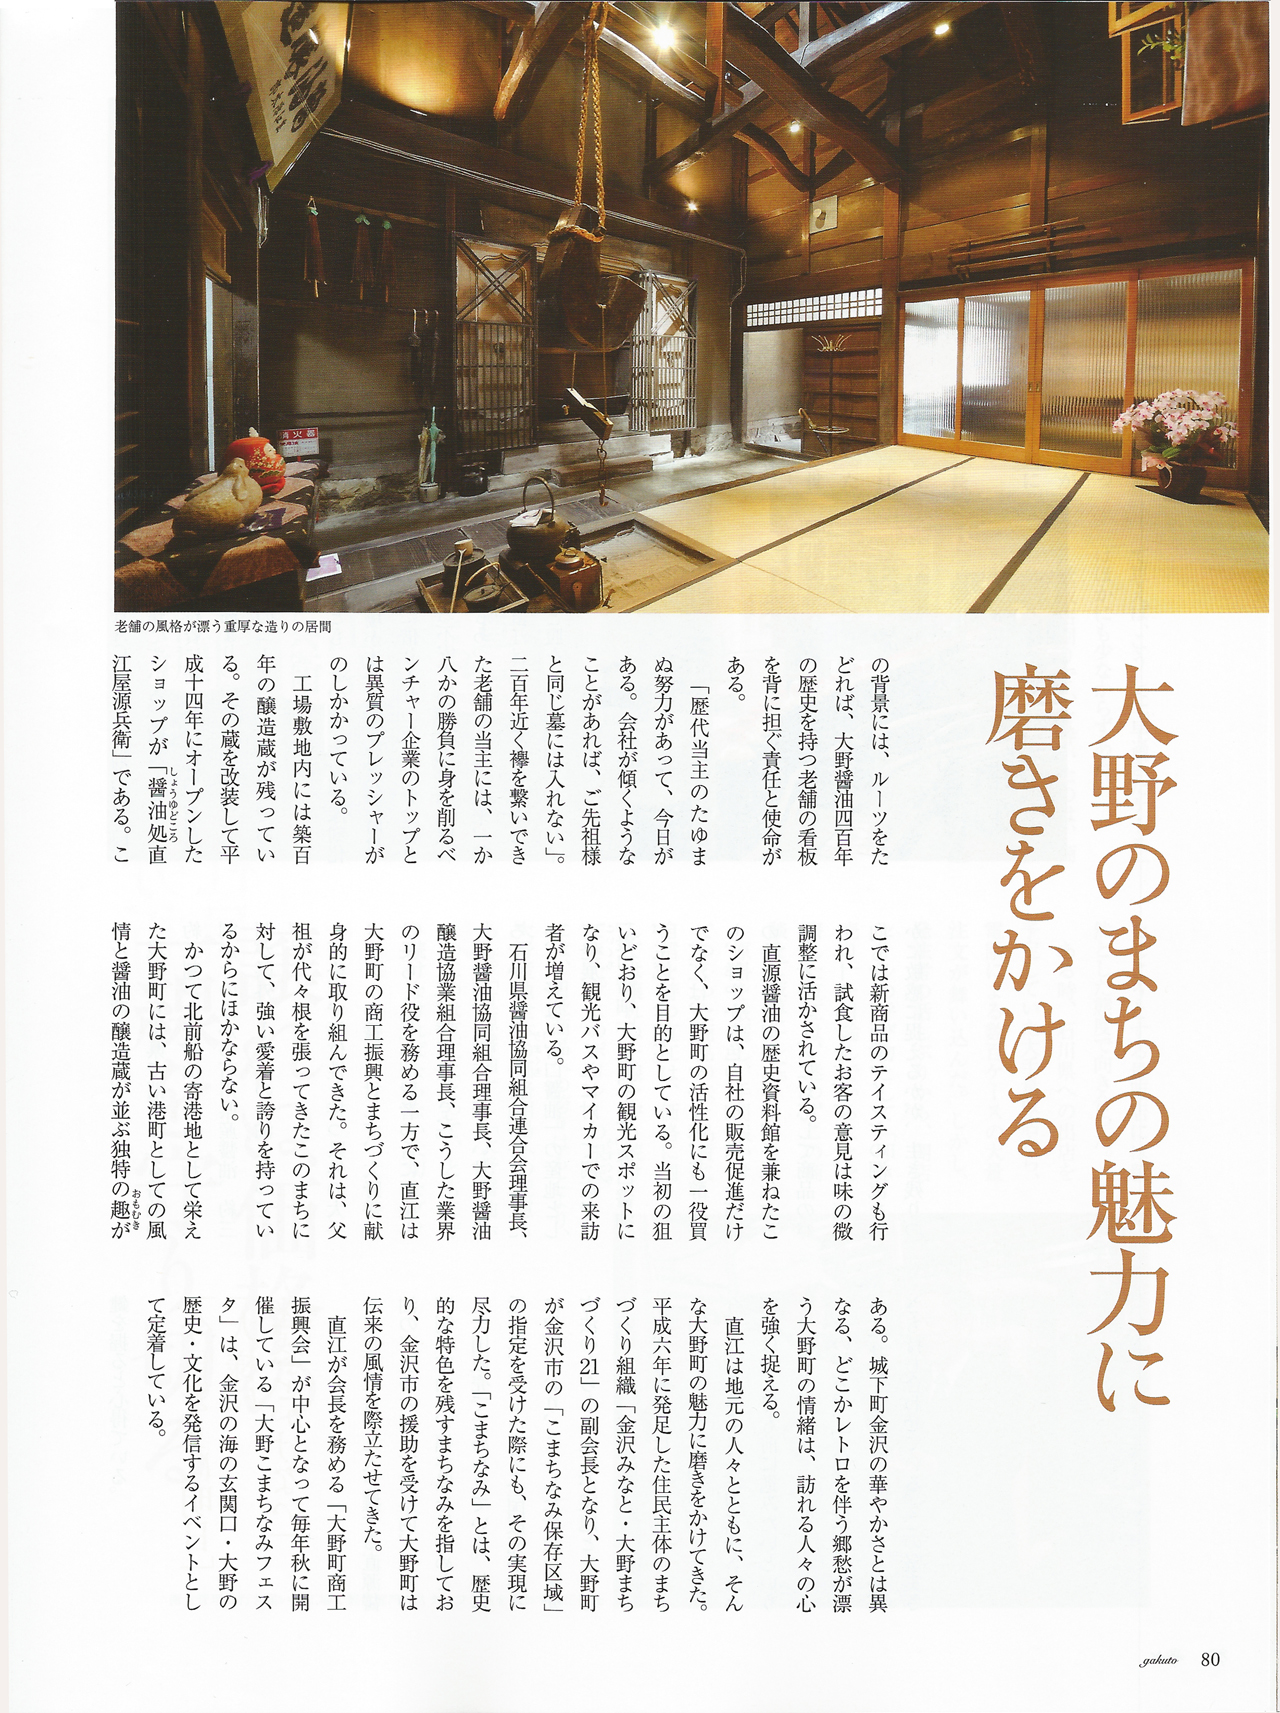 gakuto magazine 2011, 7-8, Vol 44, Naoe Shigeyuki